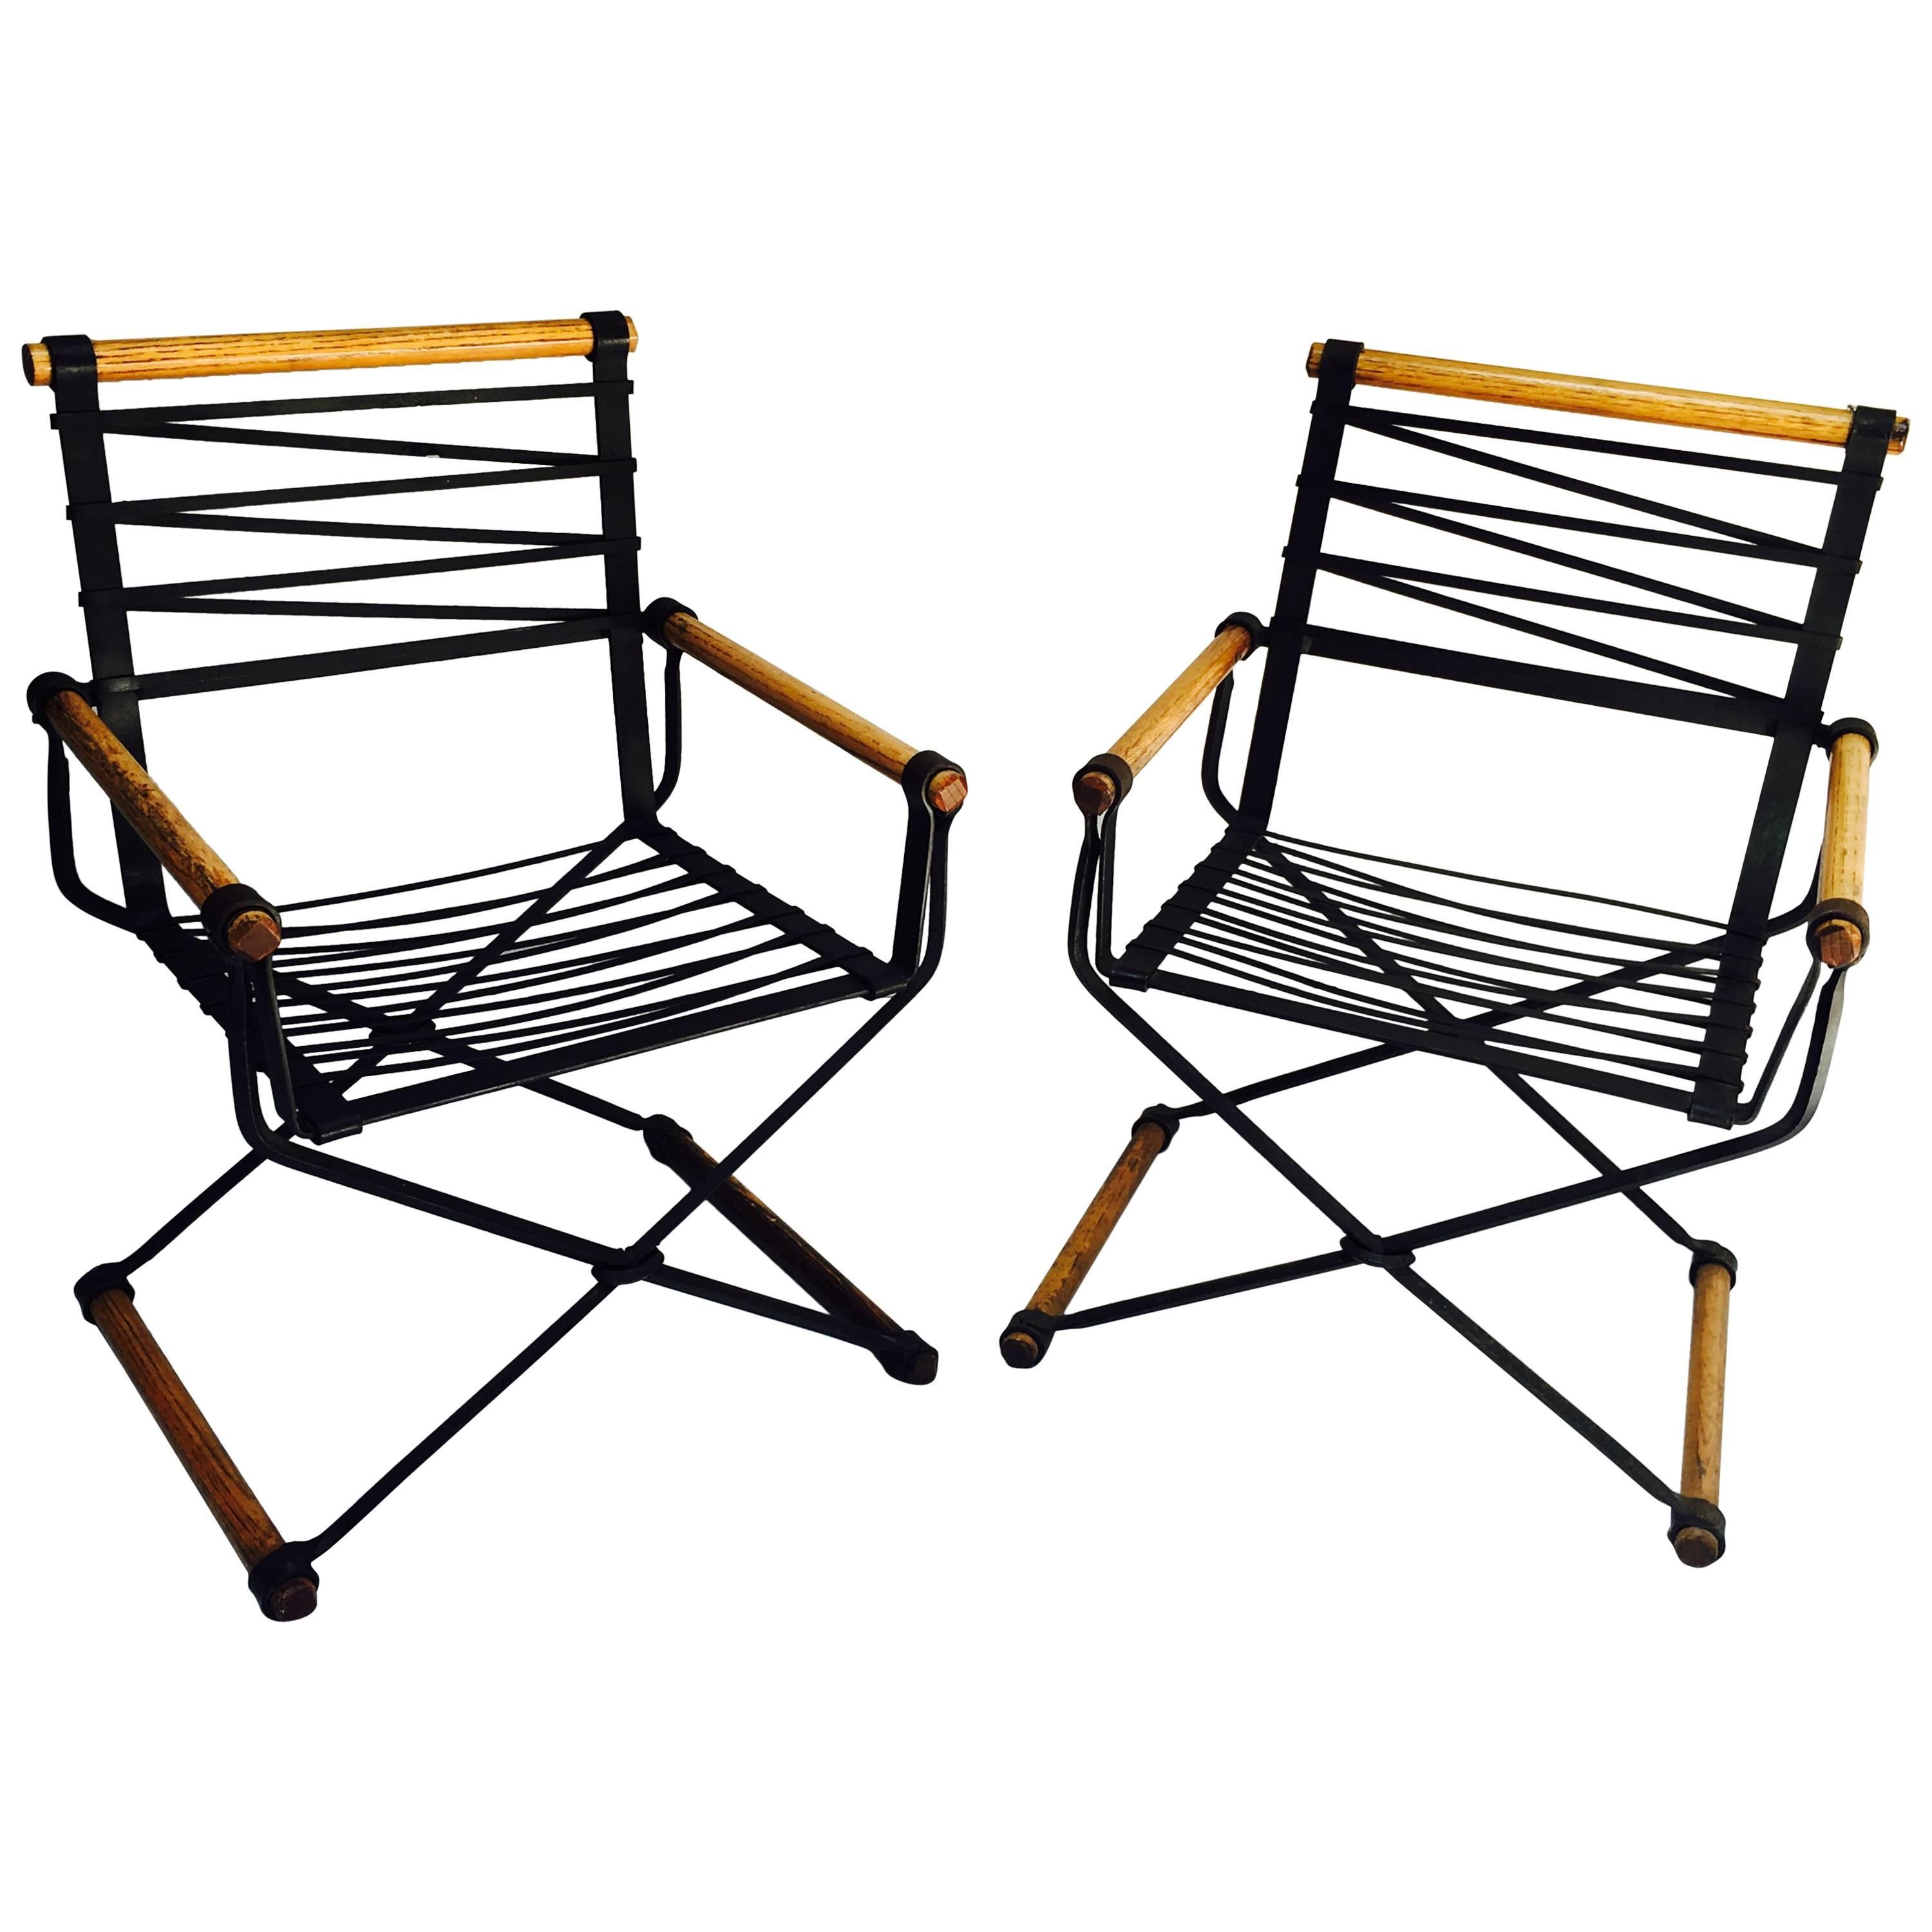 Zwei handgefertigte Sessel aus Schmiedeeisen, entworfen von Cleo Baldon und hergestellt in ihrem Atelier/Werkstatt Terra in den 1960er Jahren.
Die Stühle und ihre Polster sind in ausgezeichnetem Zustand.
 